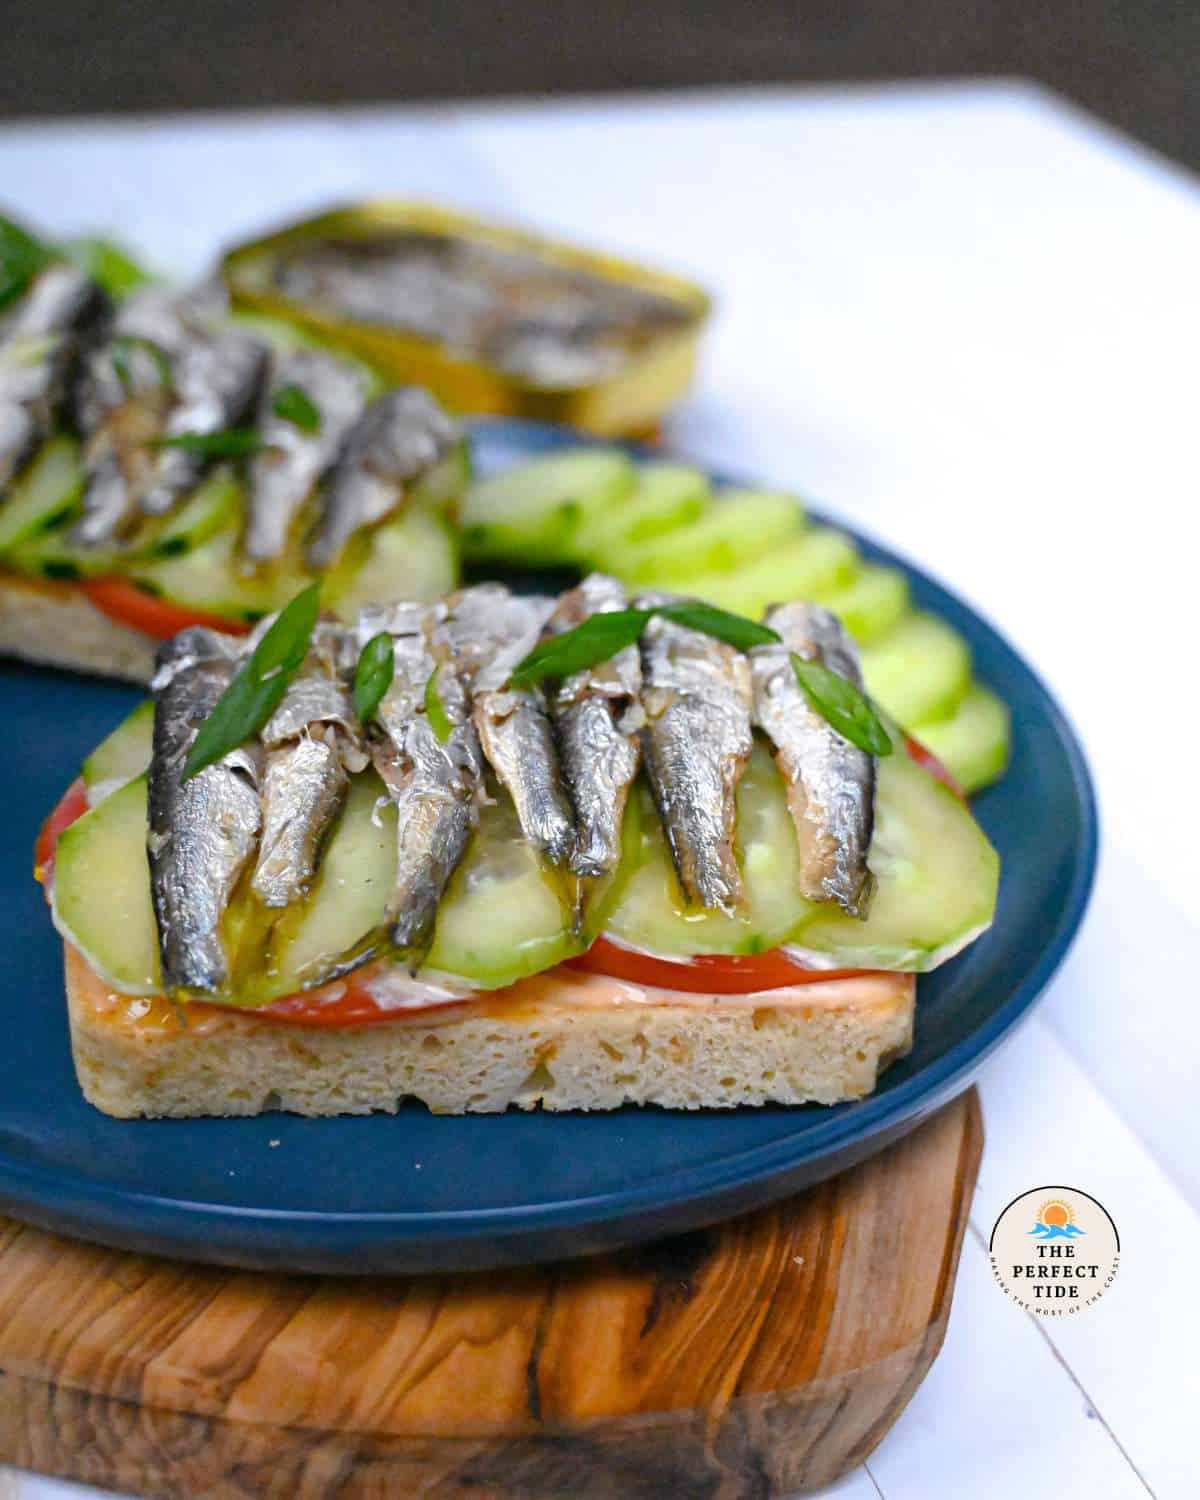 sardine sandwich with fresh ingredients